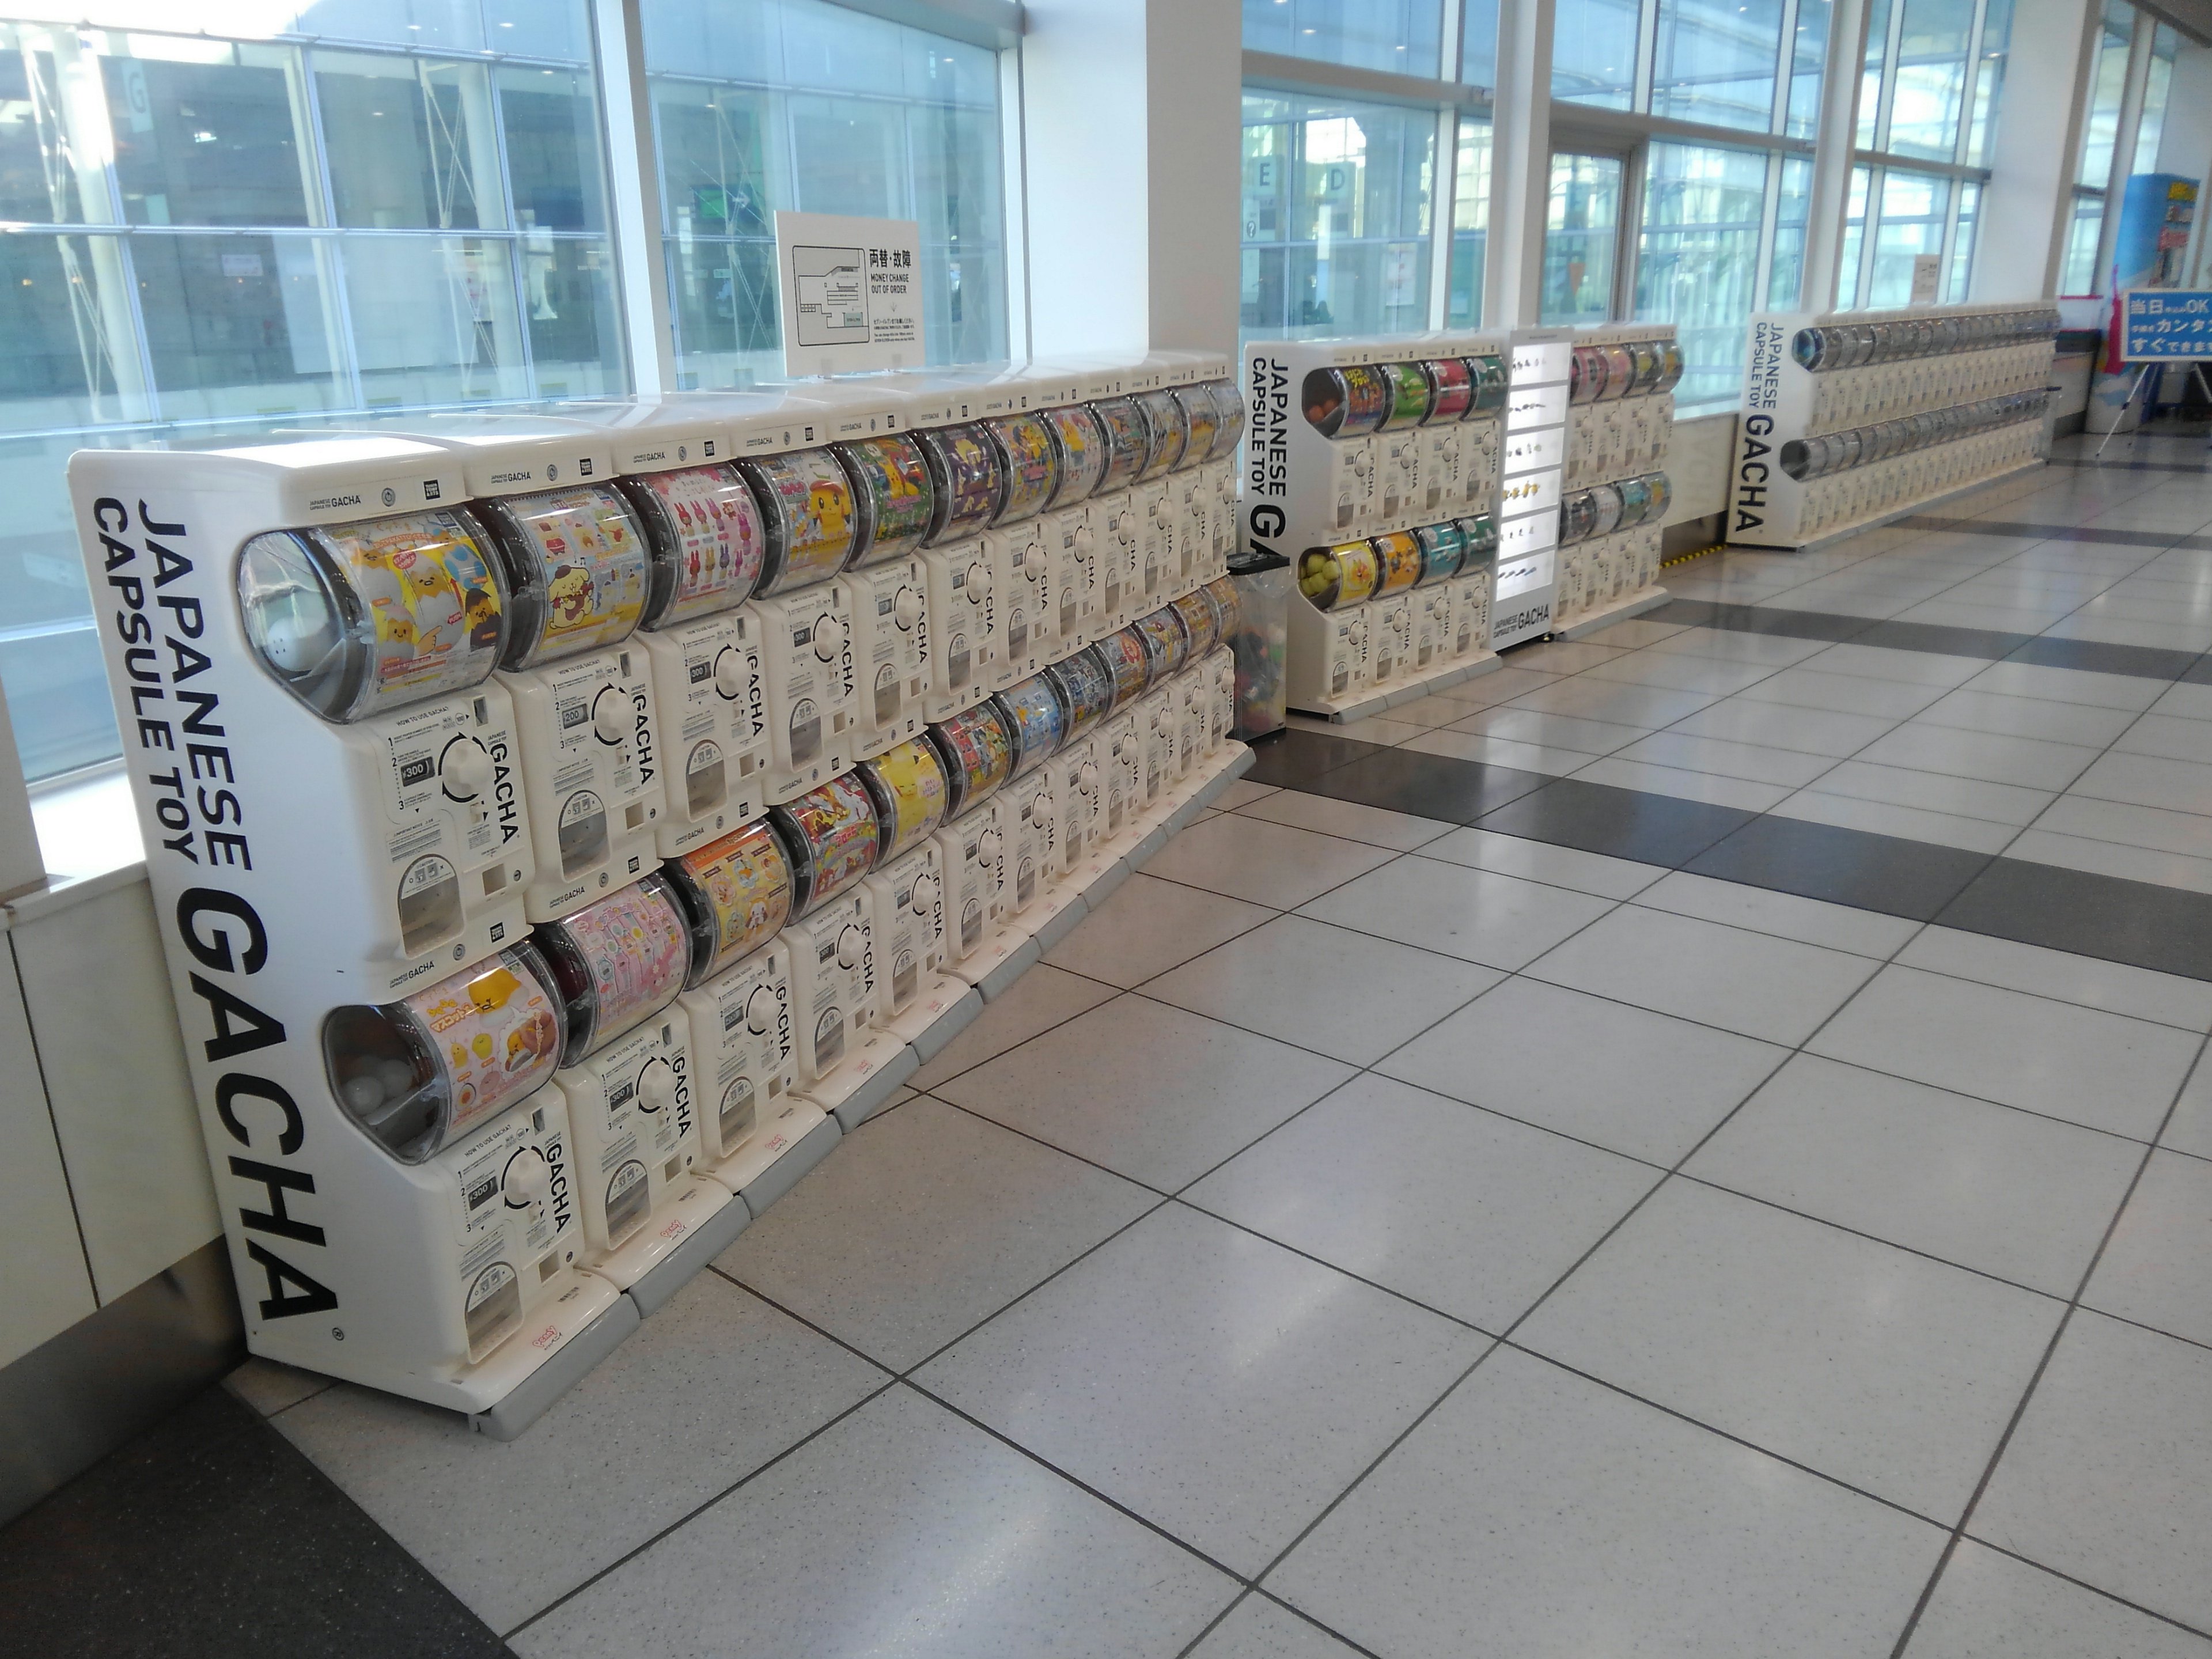 S Takaoka 京急羽田空港国際線ターミナル駅3階に ガチャガチャの機械が設置されました タカラトミーが 空港ガチャ という名称で各空港に設置しているようです ターミナル5階のtokyo Pop Townにもガチャガチャの機械があります T Co Inlokvpxq4